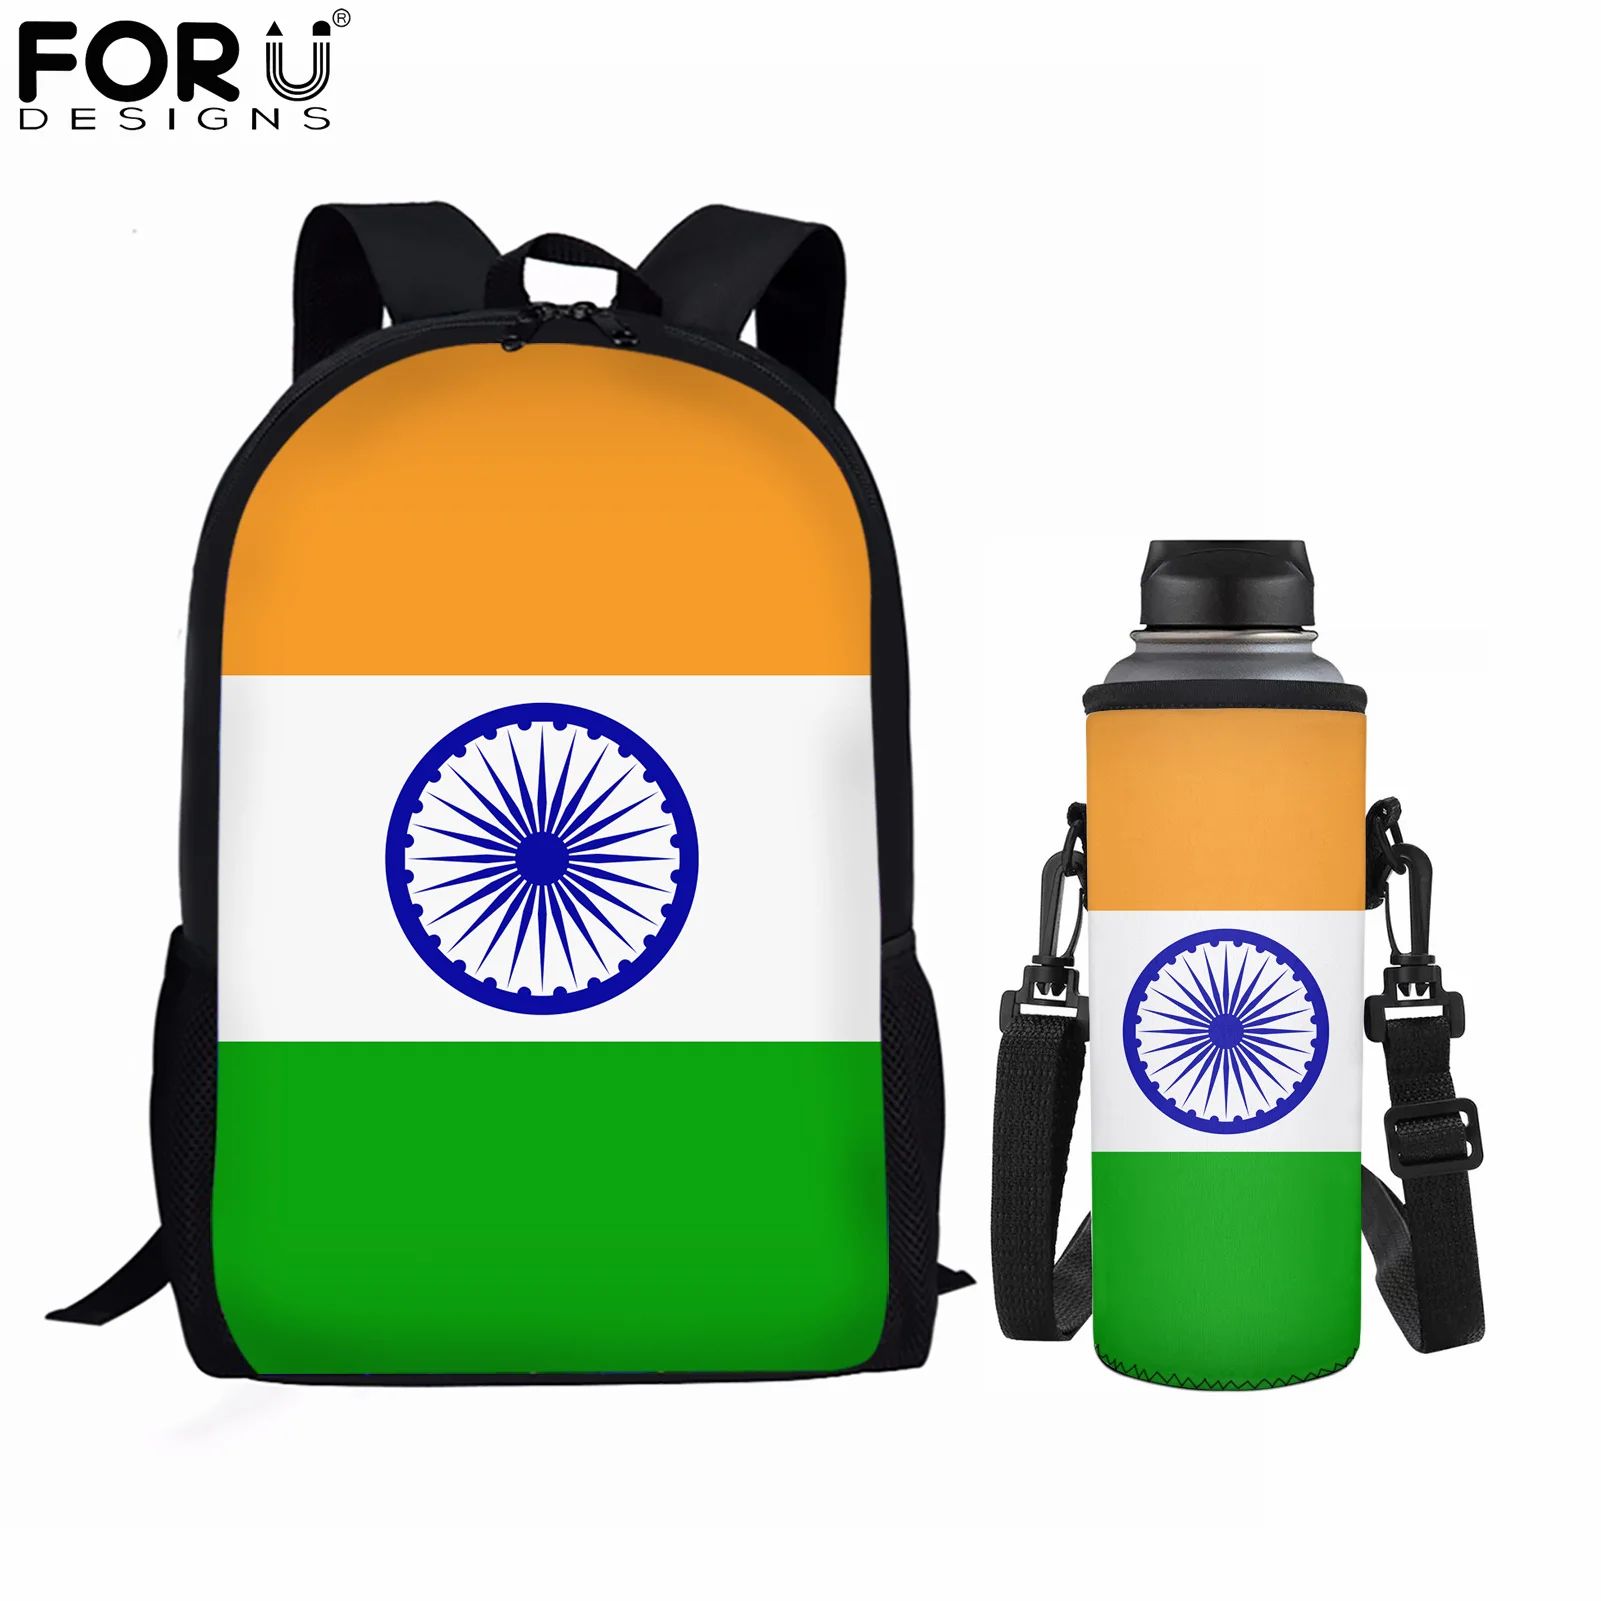 FORUDESIGNS, новые модные вместительные школьные ранцы для студентов с флагом Индии, дизайнерский рюкзак, 2 шт., спортивный женский рюкзак